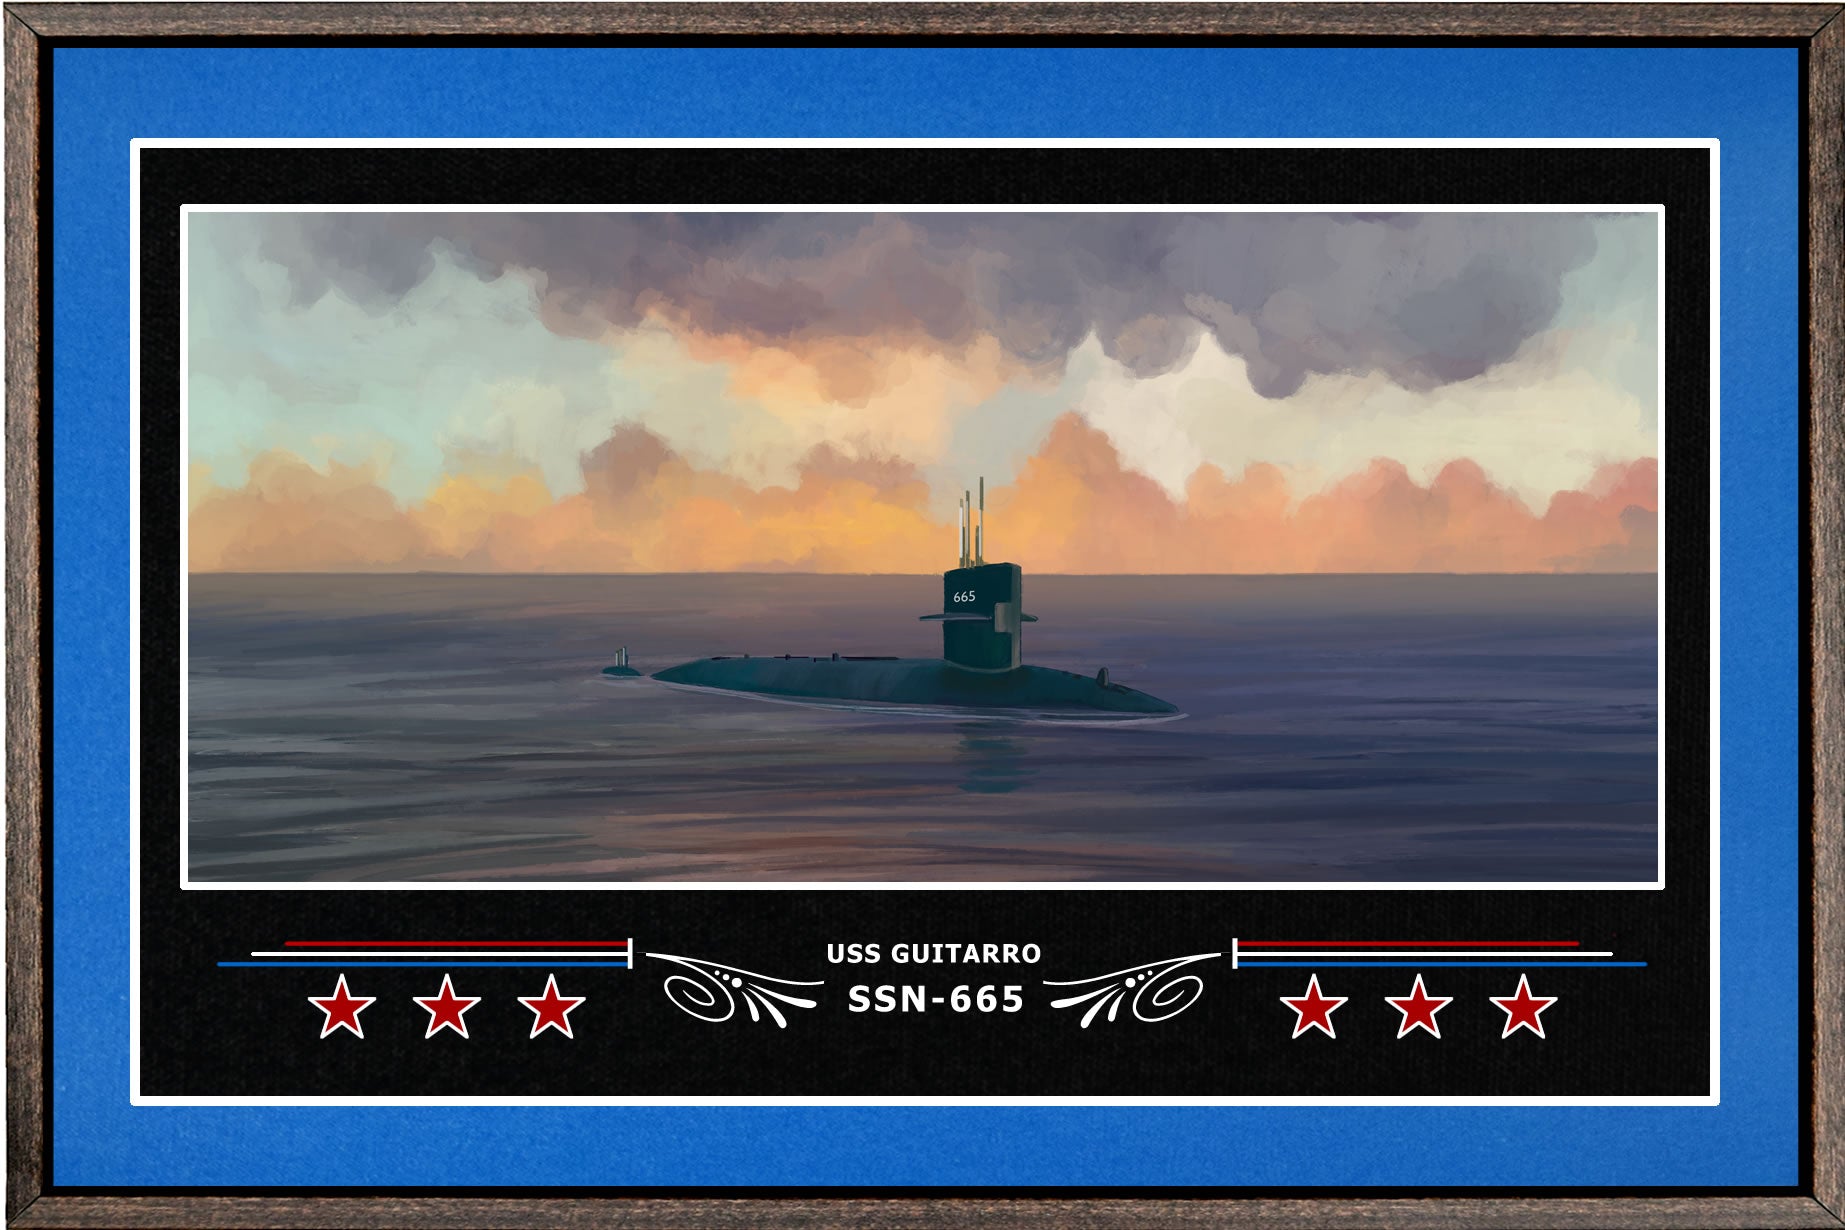 USS GUITARRO SSN 665 BOX FRAMED CANVAS ART BLUE